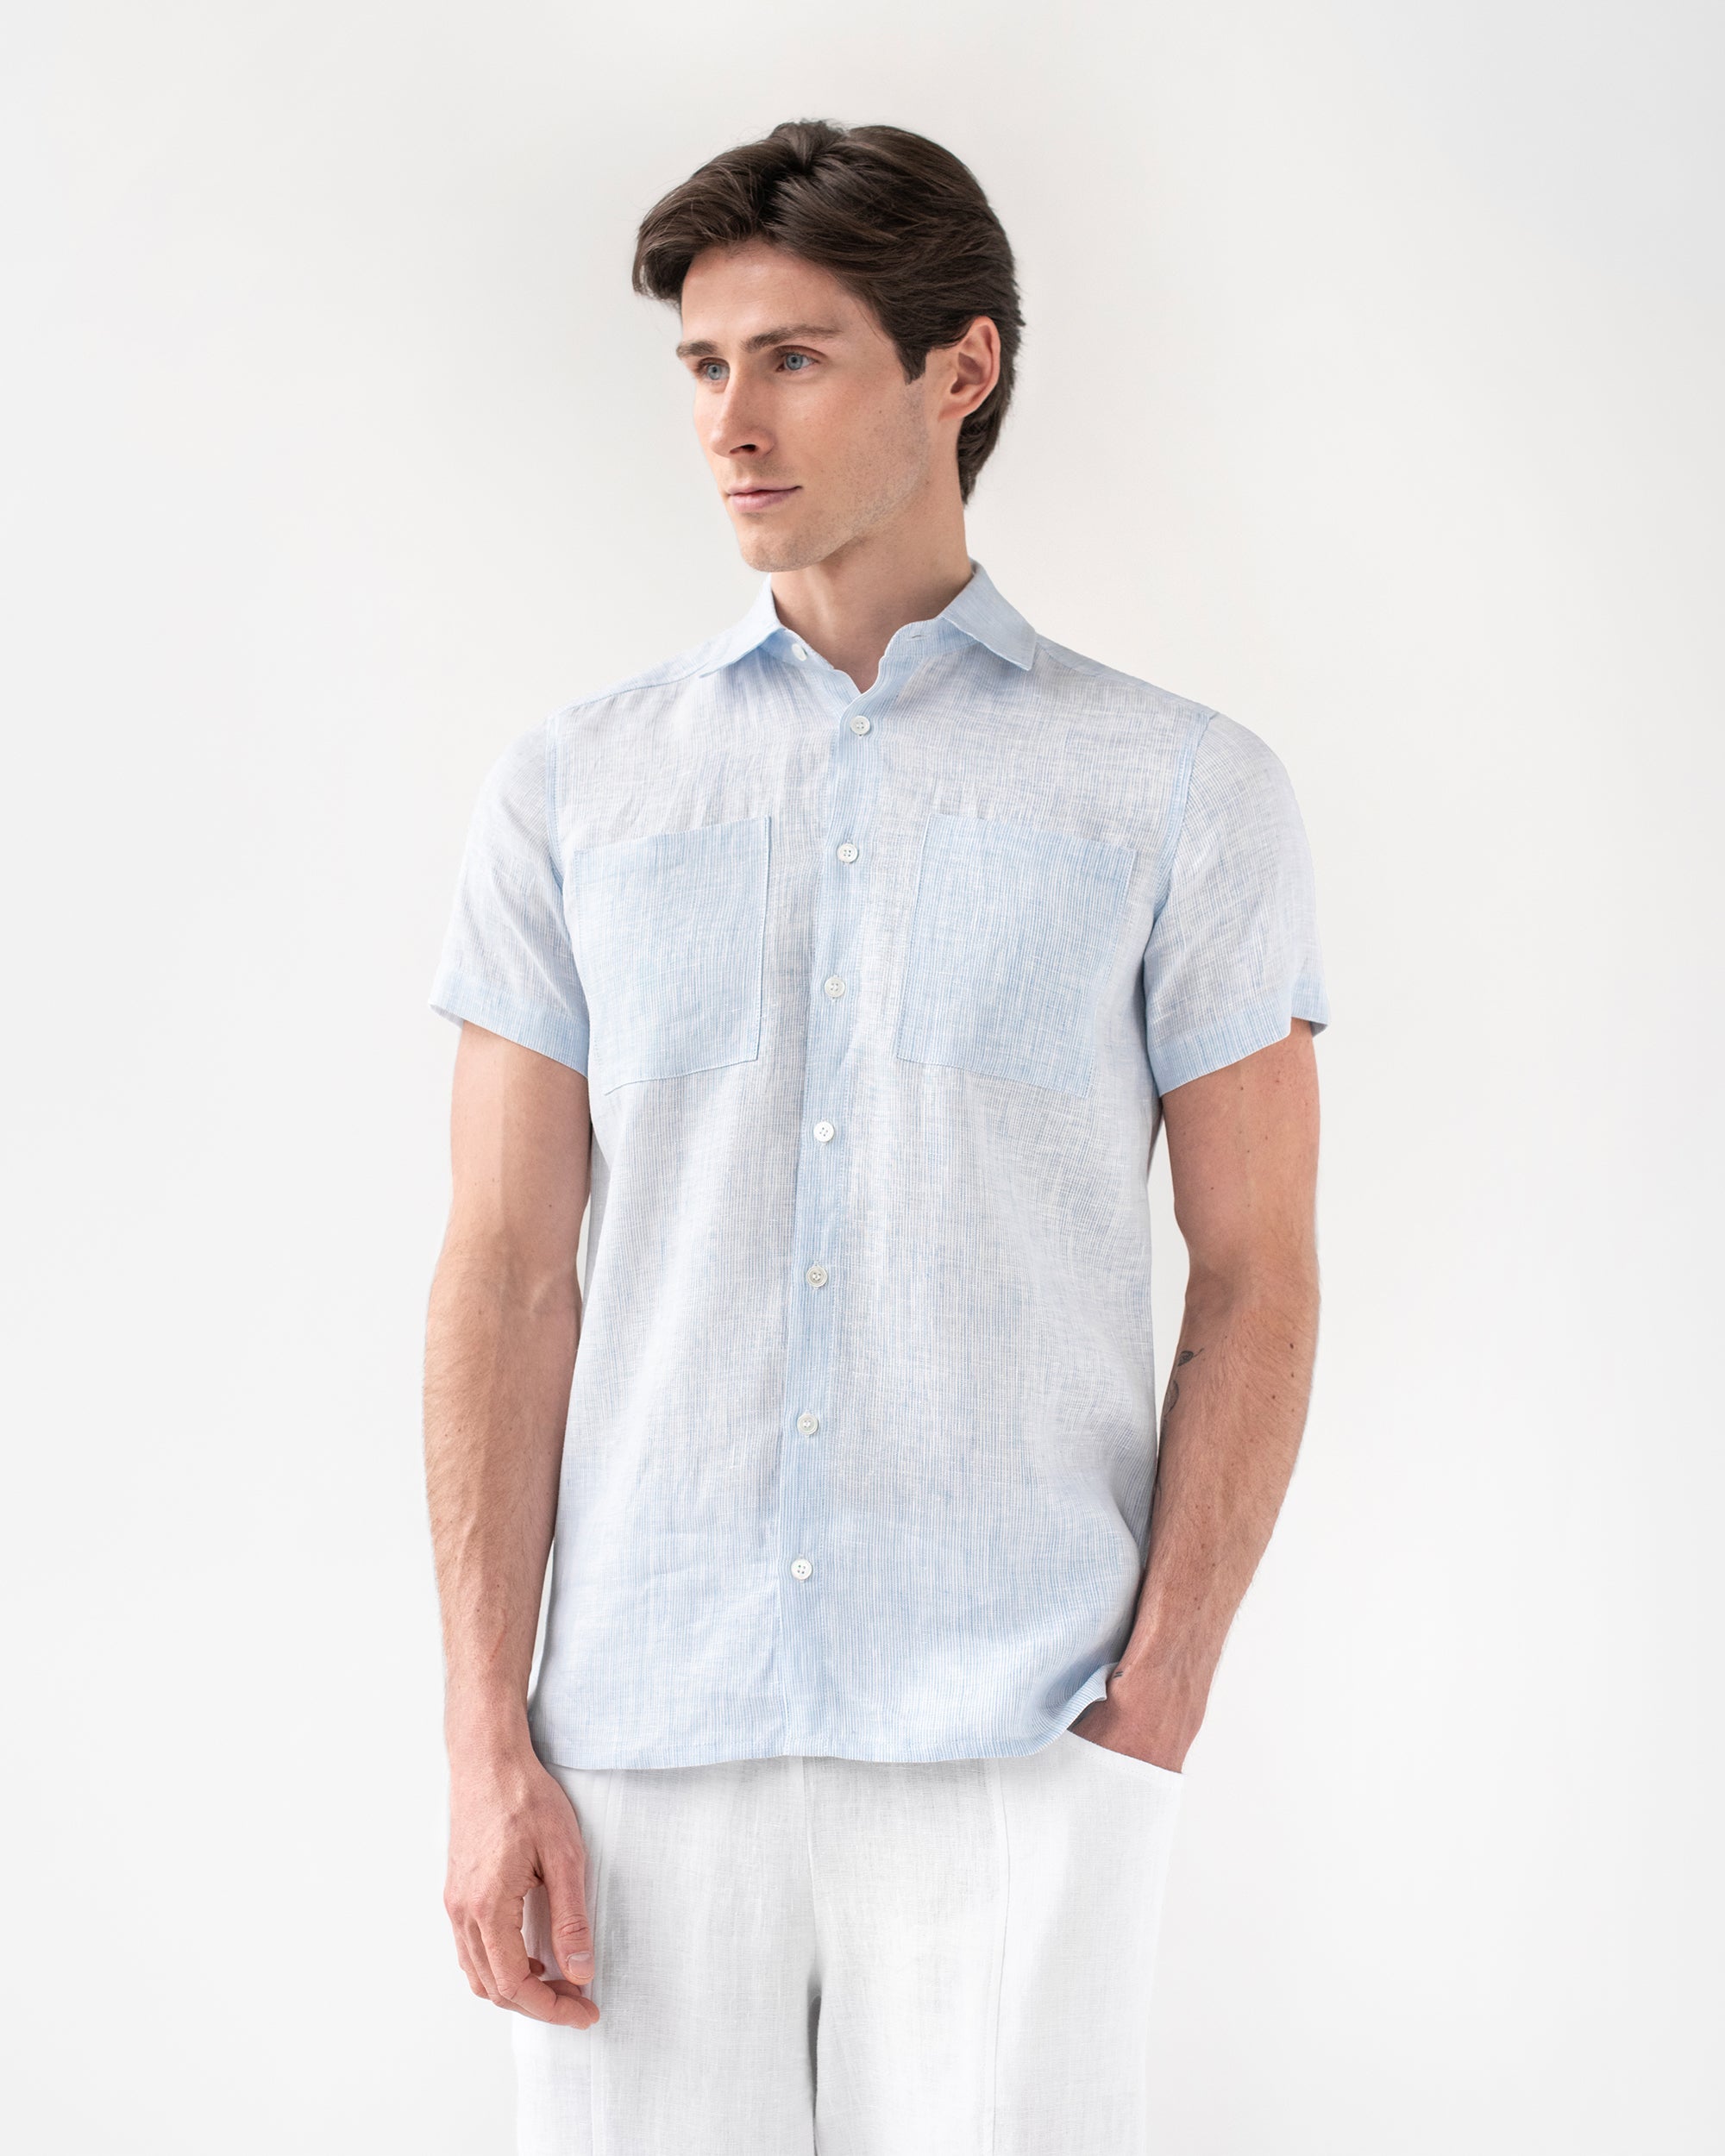 Men's Linen Shirt PORTLAND in Pinstripe Blue | MagicLinen